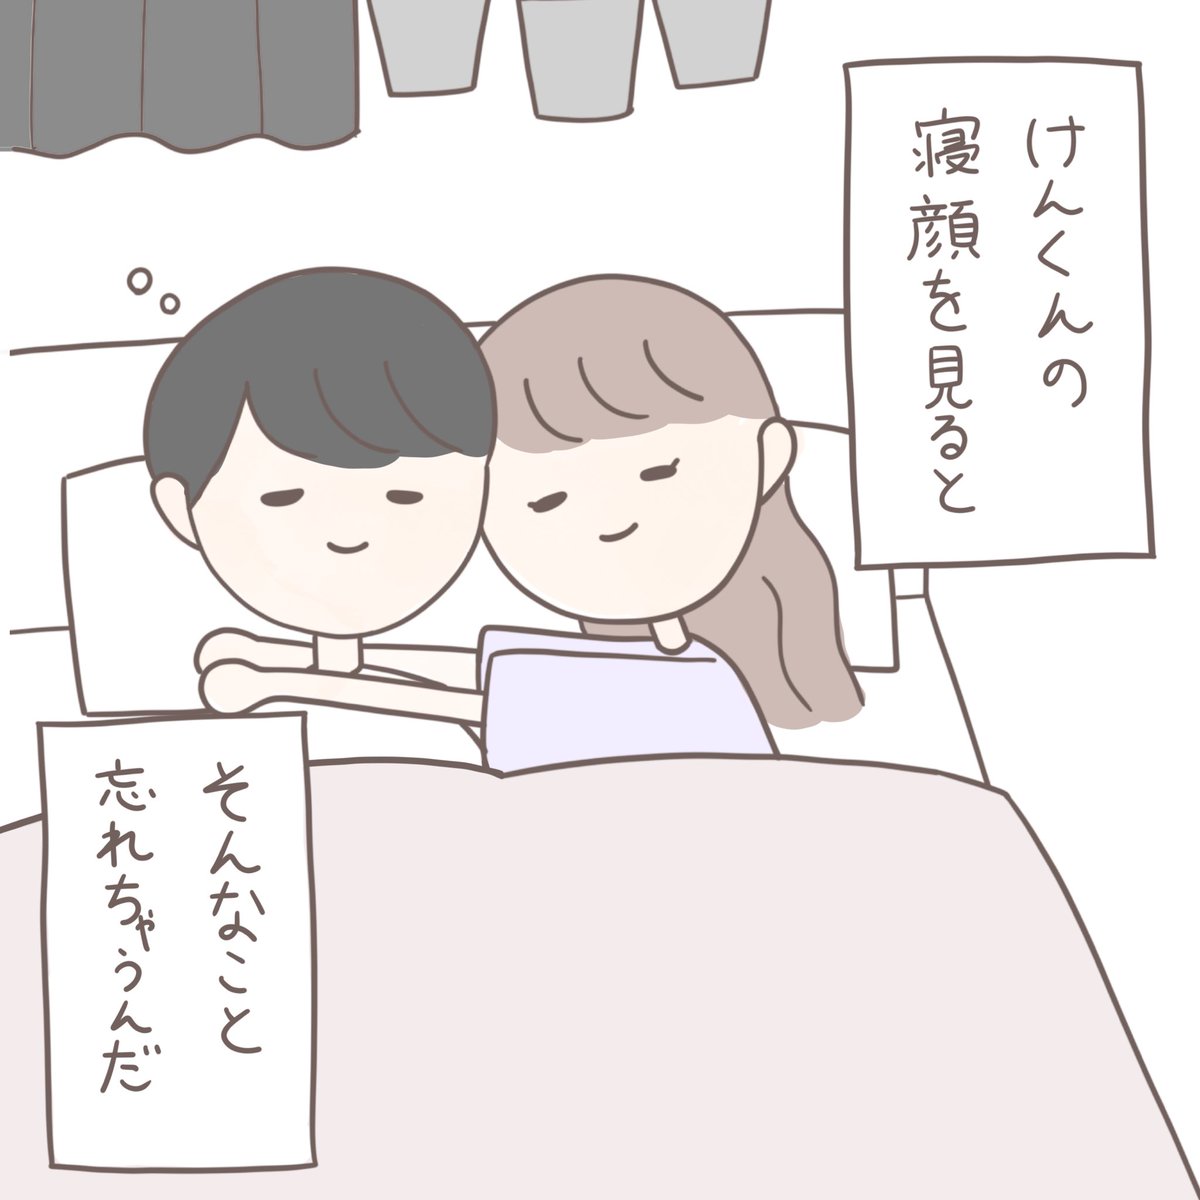 Usagi ほのぼの恋愛漫画 いつもの朝に カップル漫画 カップルイラスト